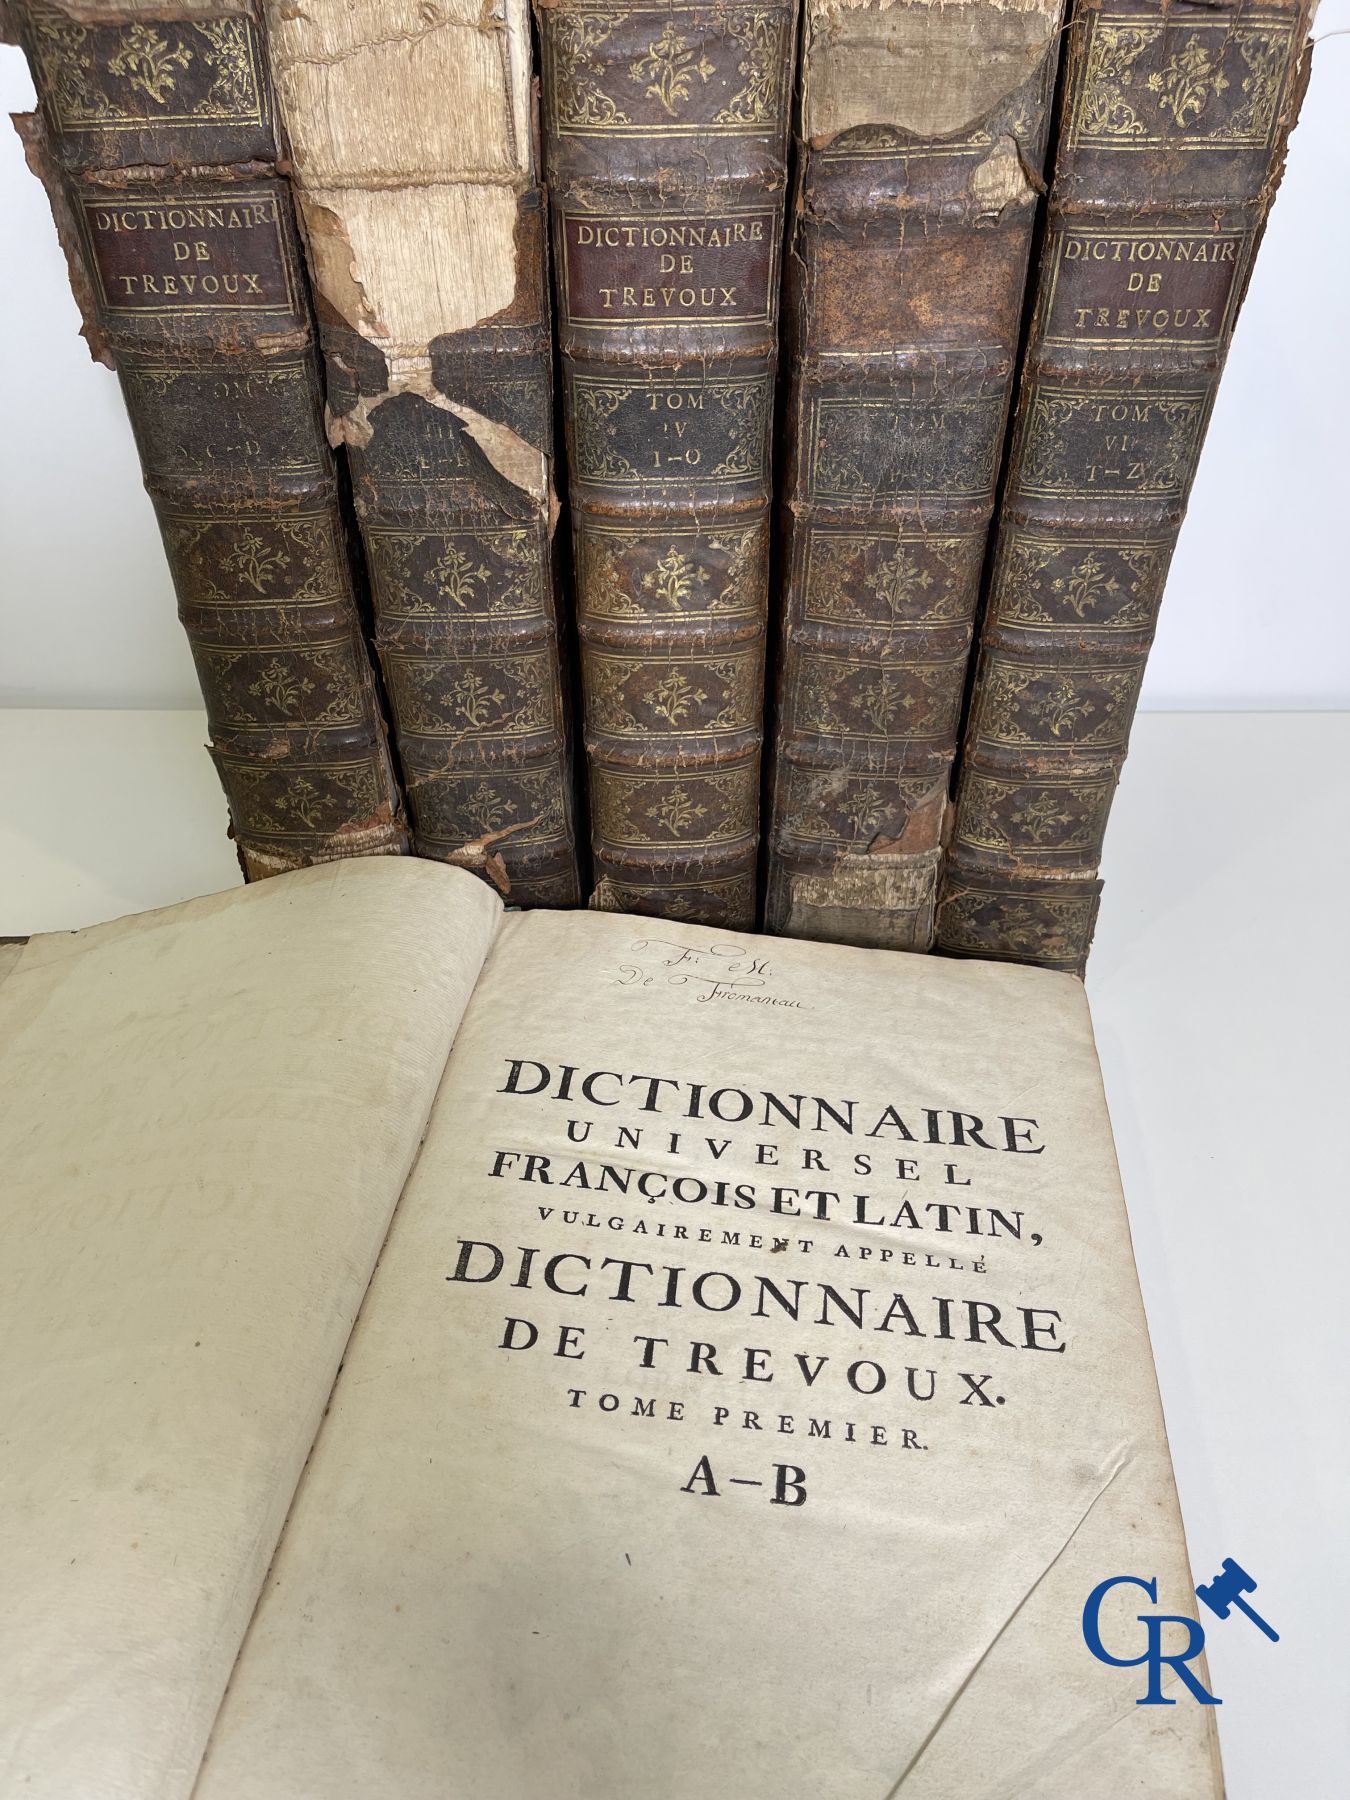 Early printed books: Dictionnaire de Trévoux, Pierre Antoine 1740. - Image 2 of 18